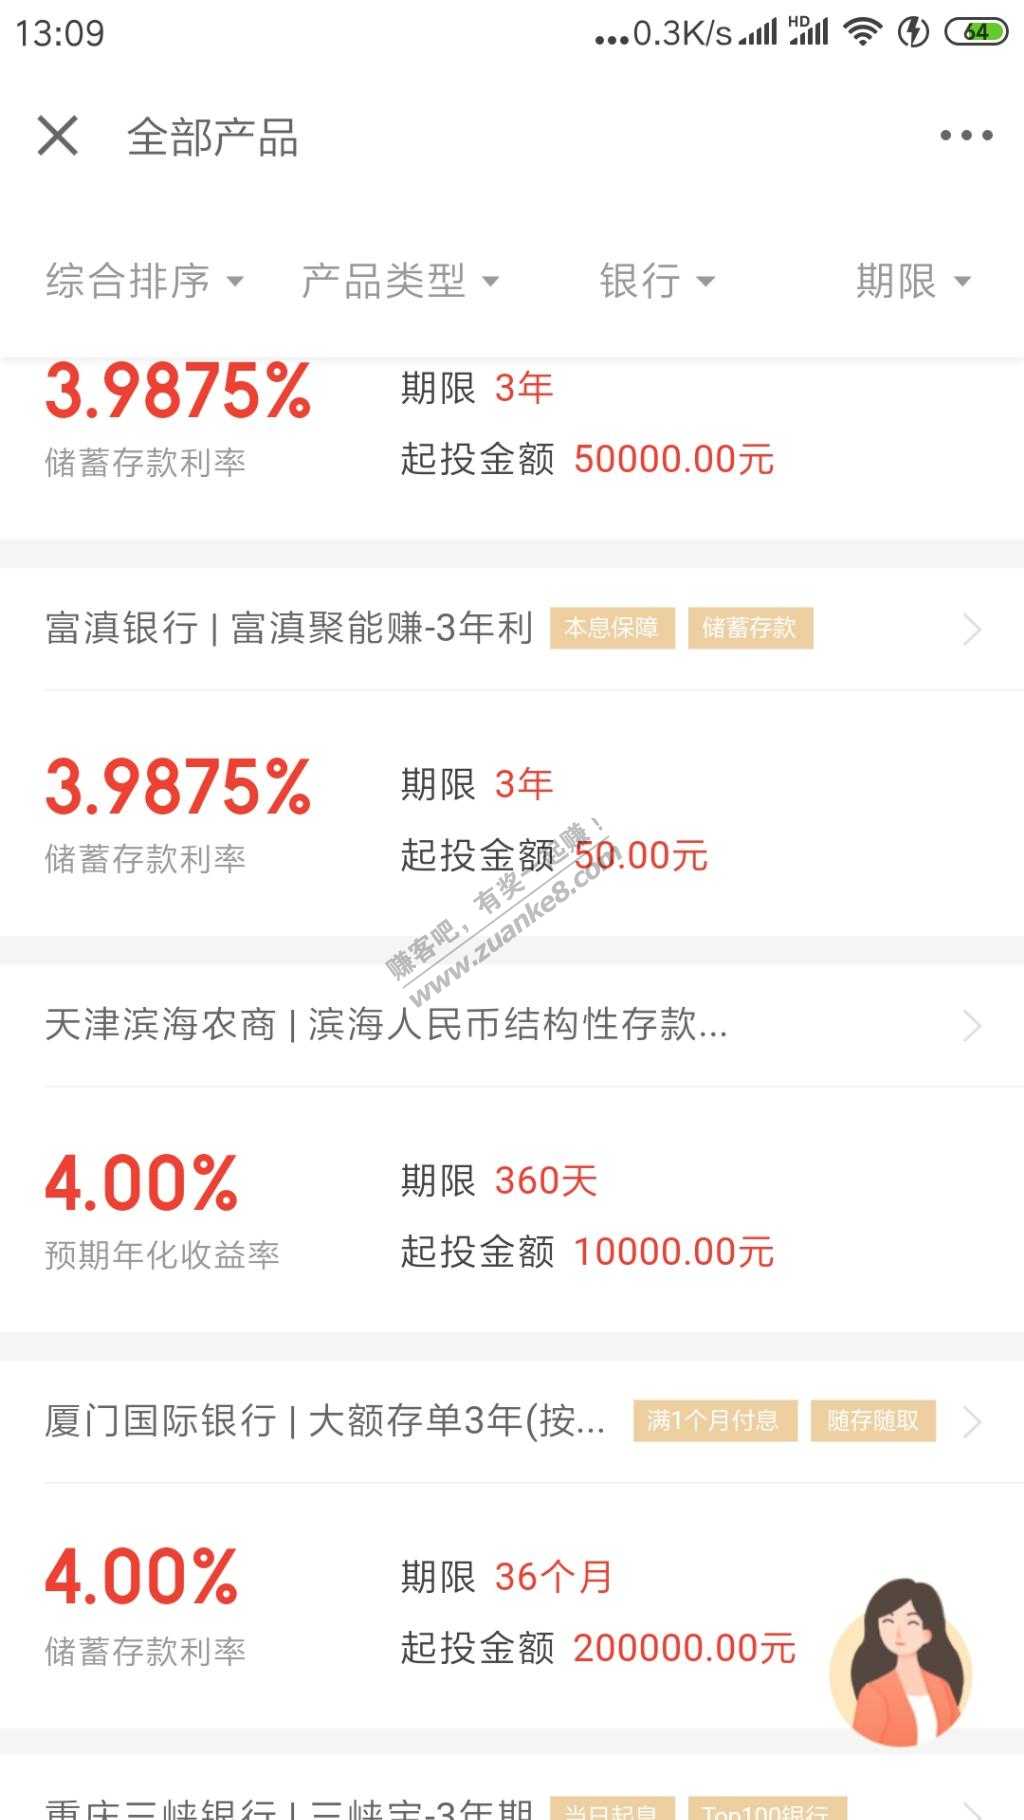 京东银行理财年华4% 天津滨海农商定期一年。。可以上车不-惠小助(52huixz.com)